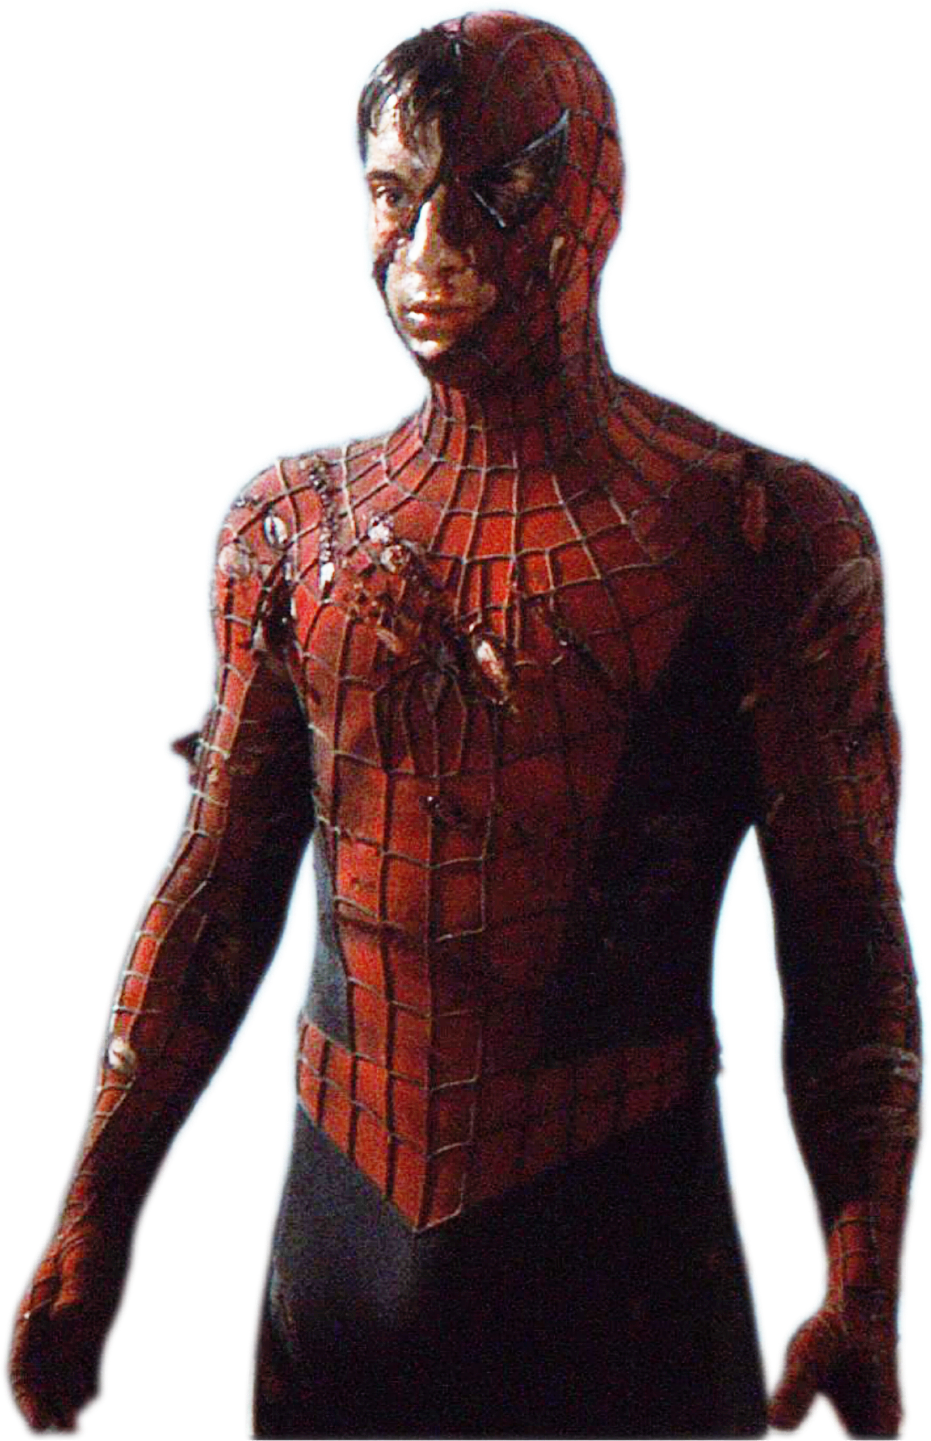 Spider-Man 2002 damage suit by Carlosgutierrezzjr on DeviantArt